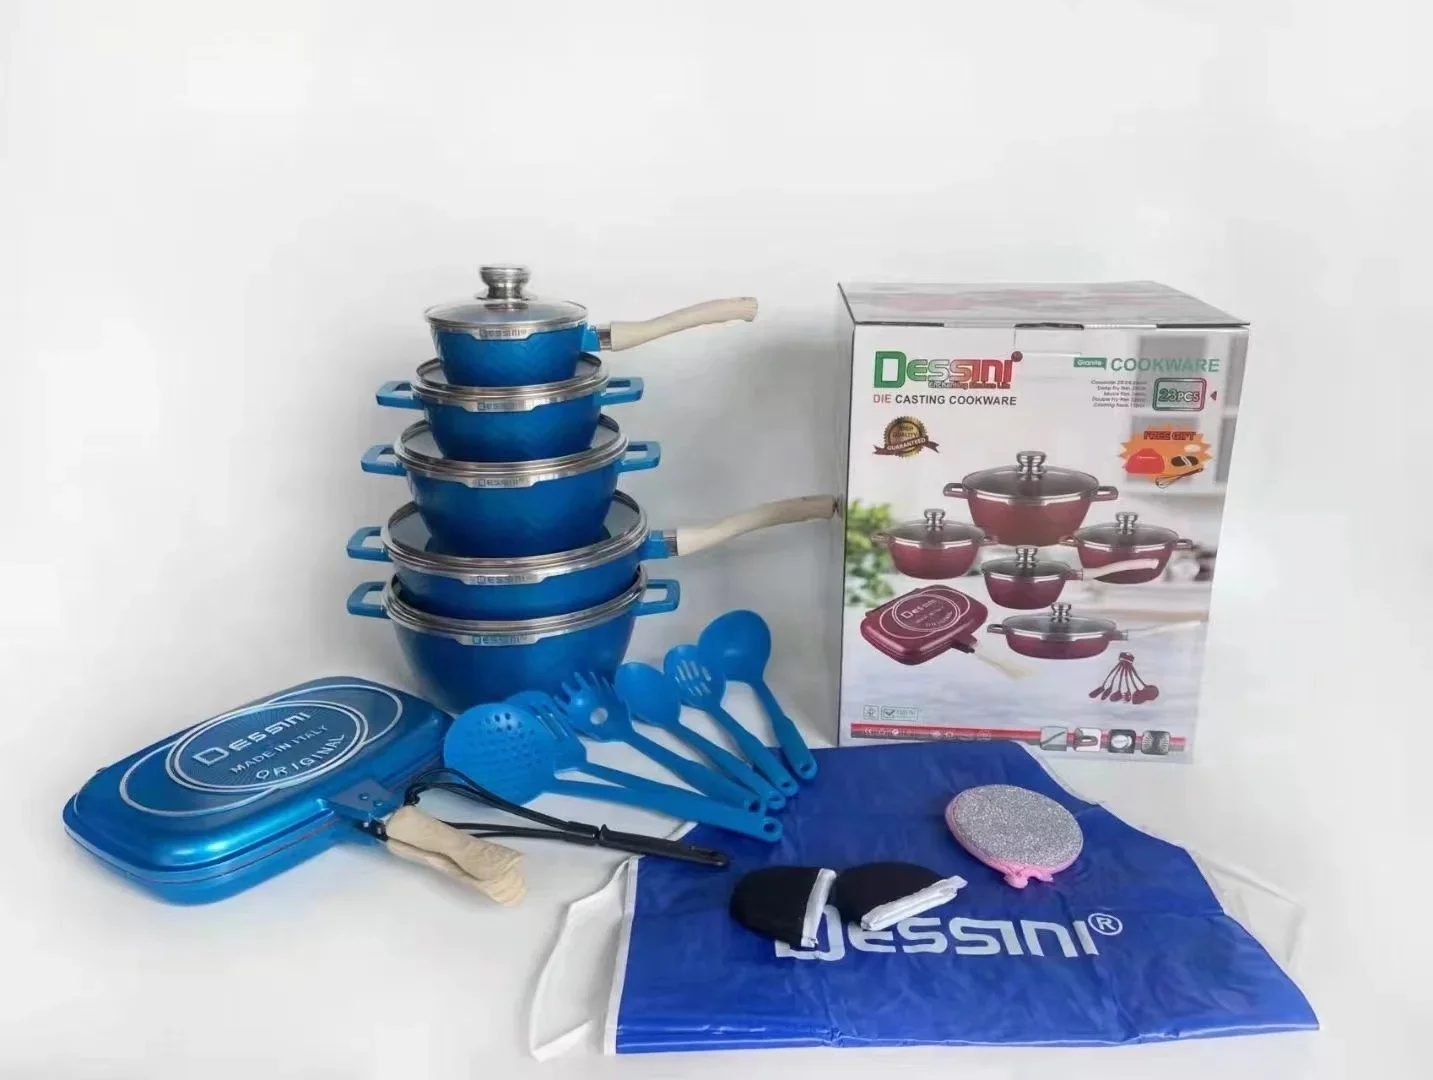 Dessini 23pcs non stick cast aluminum pots sets cooking cookware set pots and pans with glass lid